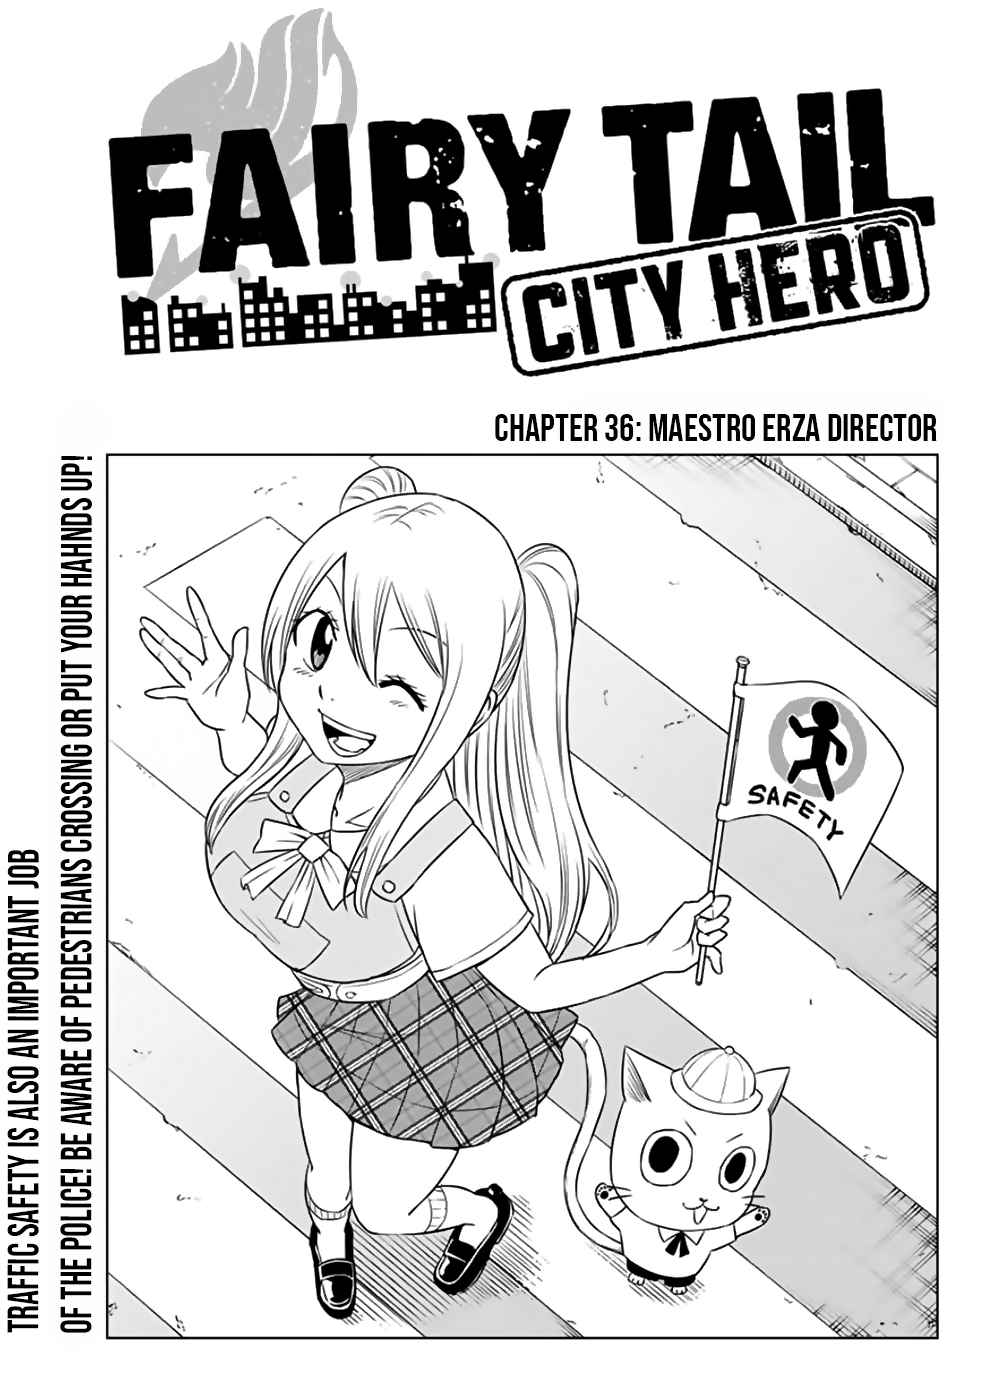 Fairy Tail: City Hero Ch. 36 Maestro Director Erza